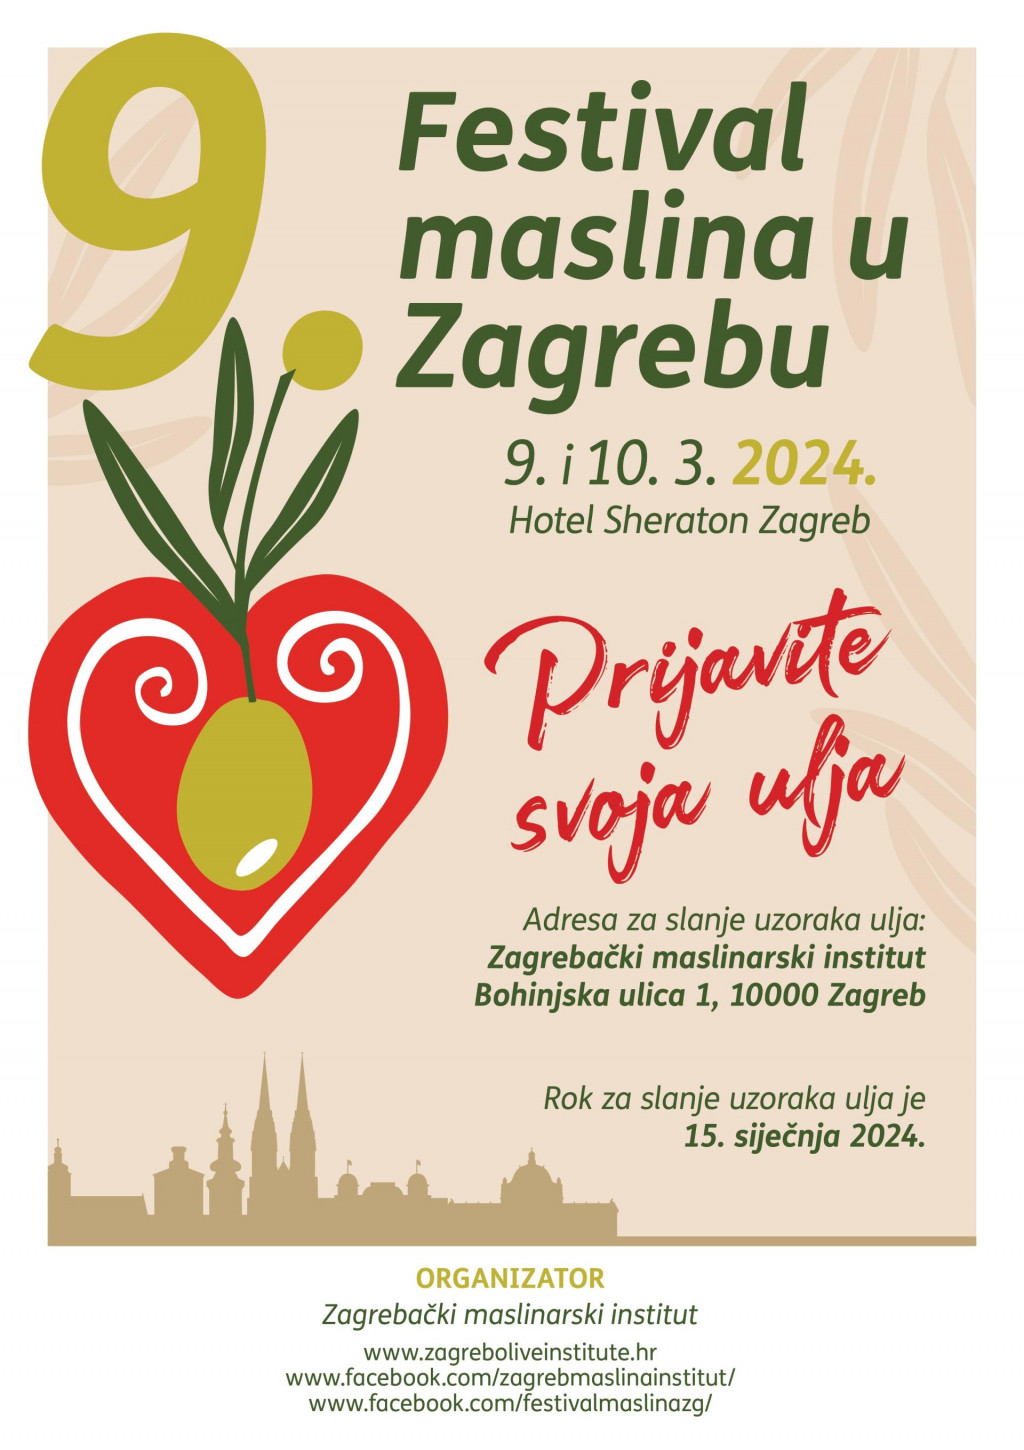 &lt;p&gt;Festival maslina u Zagrebu&lt;/p&gt;